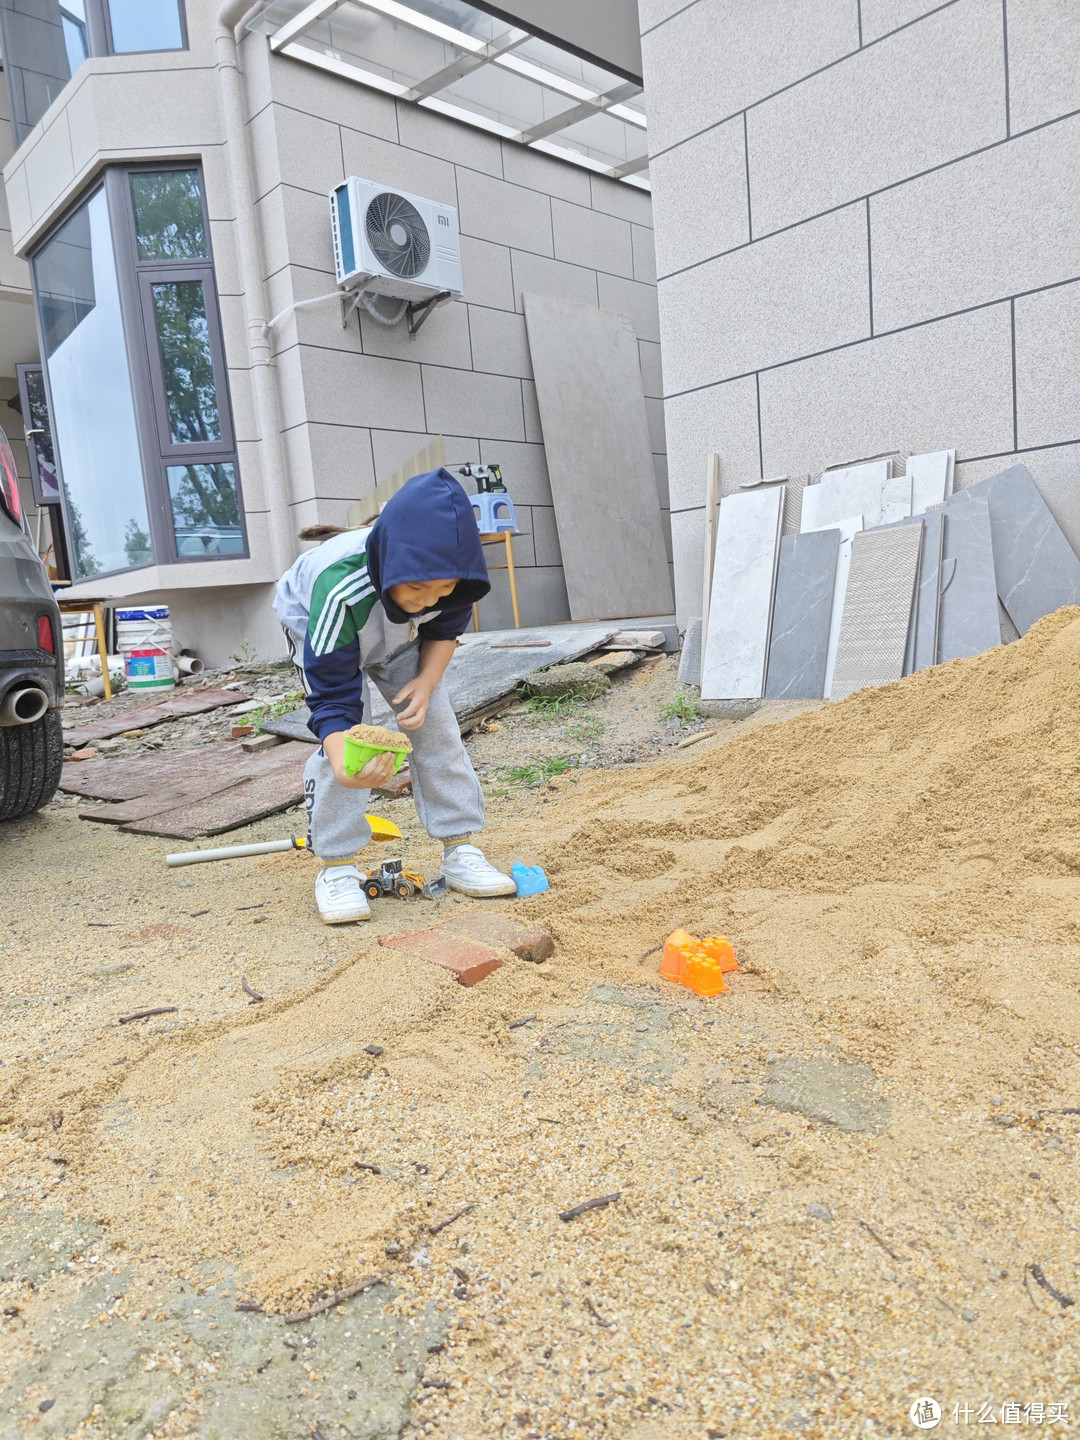 小朋友就是喜欢玩沙子